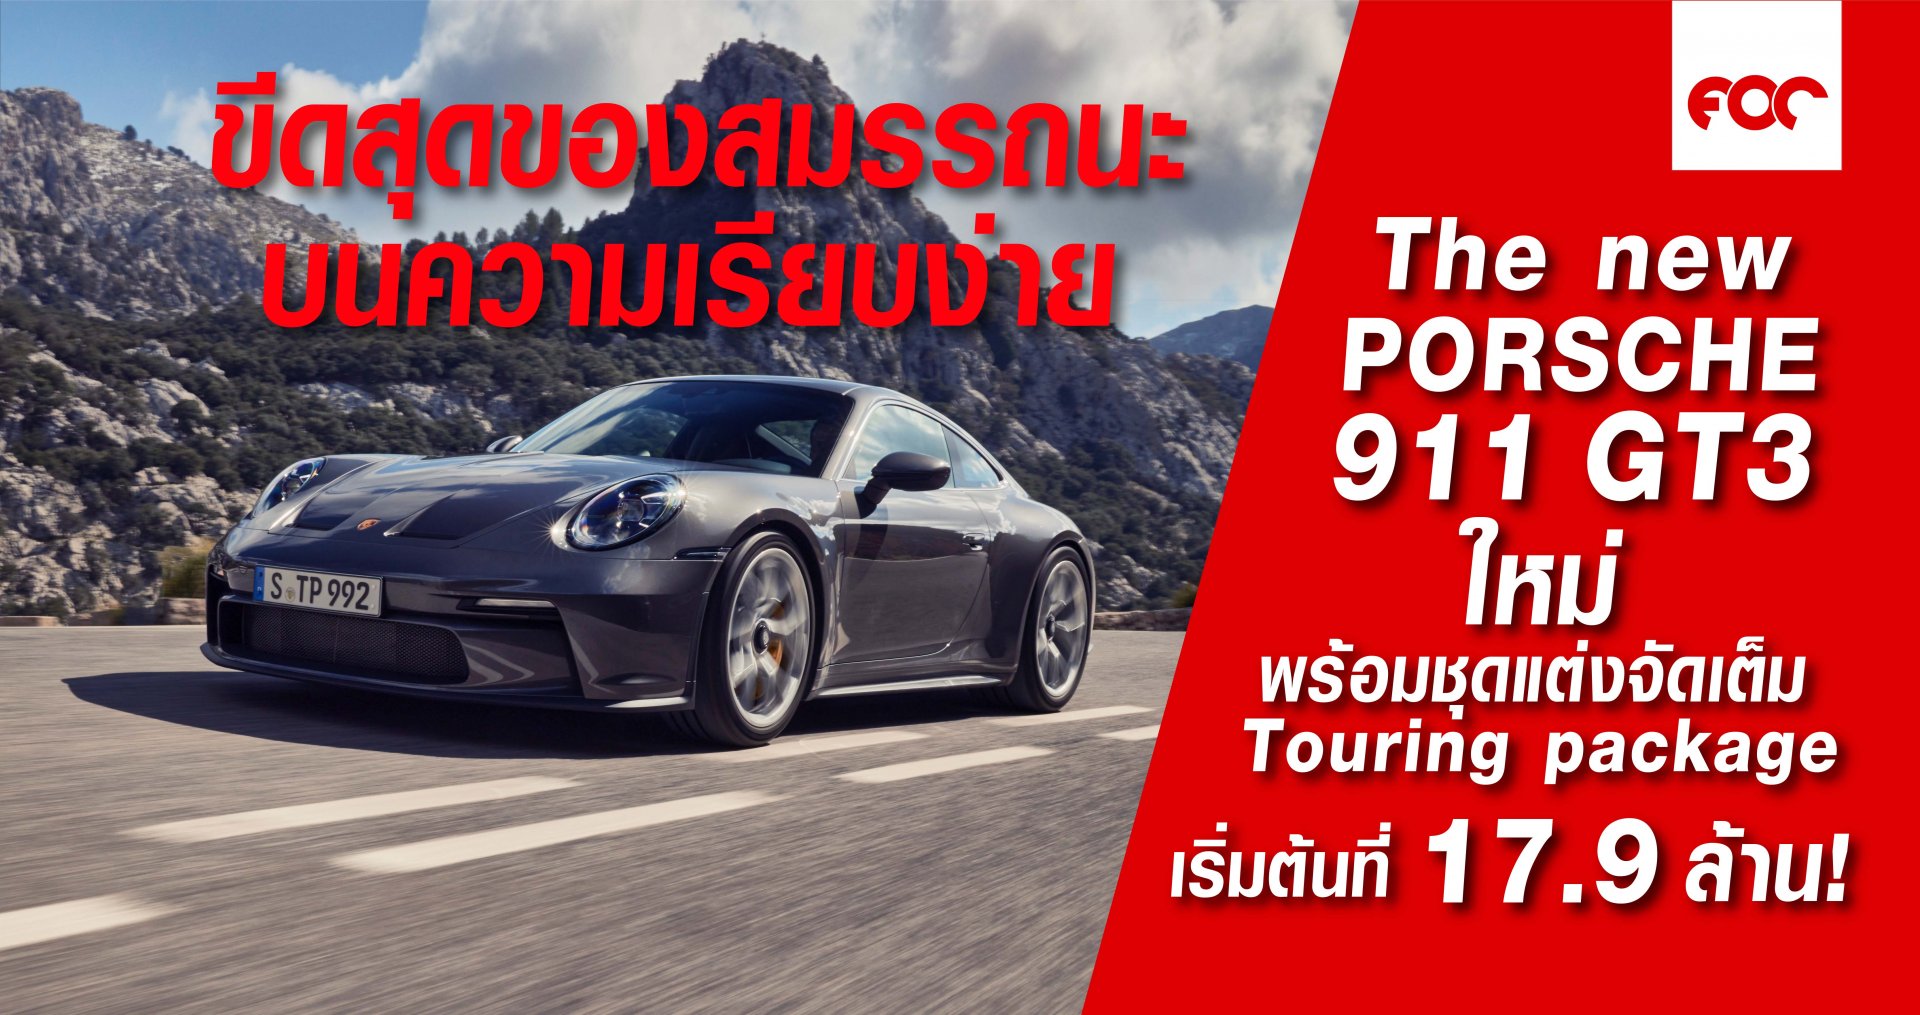 ปอร์เช่ 911 จีที3 ใหม่ (The new Porsche 911 GT3) พร้อมชุดแต่ง Touring package ราคาเริ่มต้นที่ 17.9 ล้านบาท